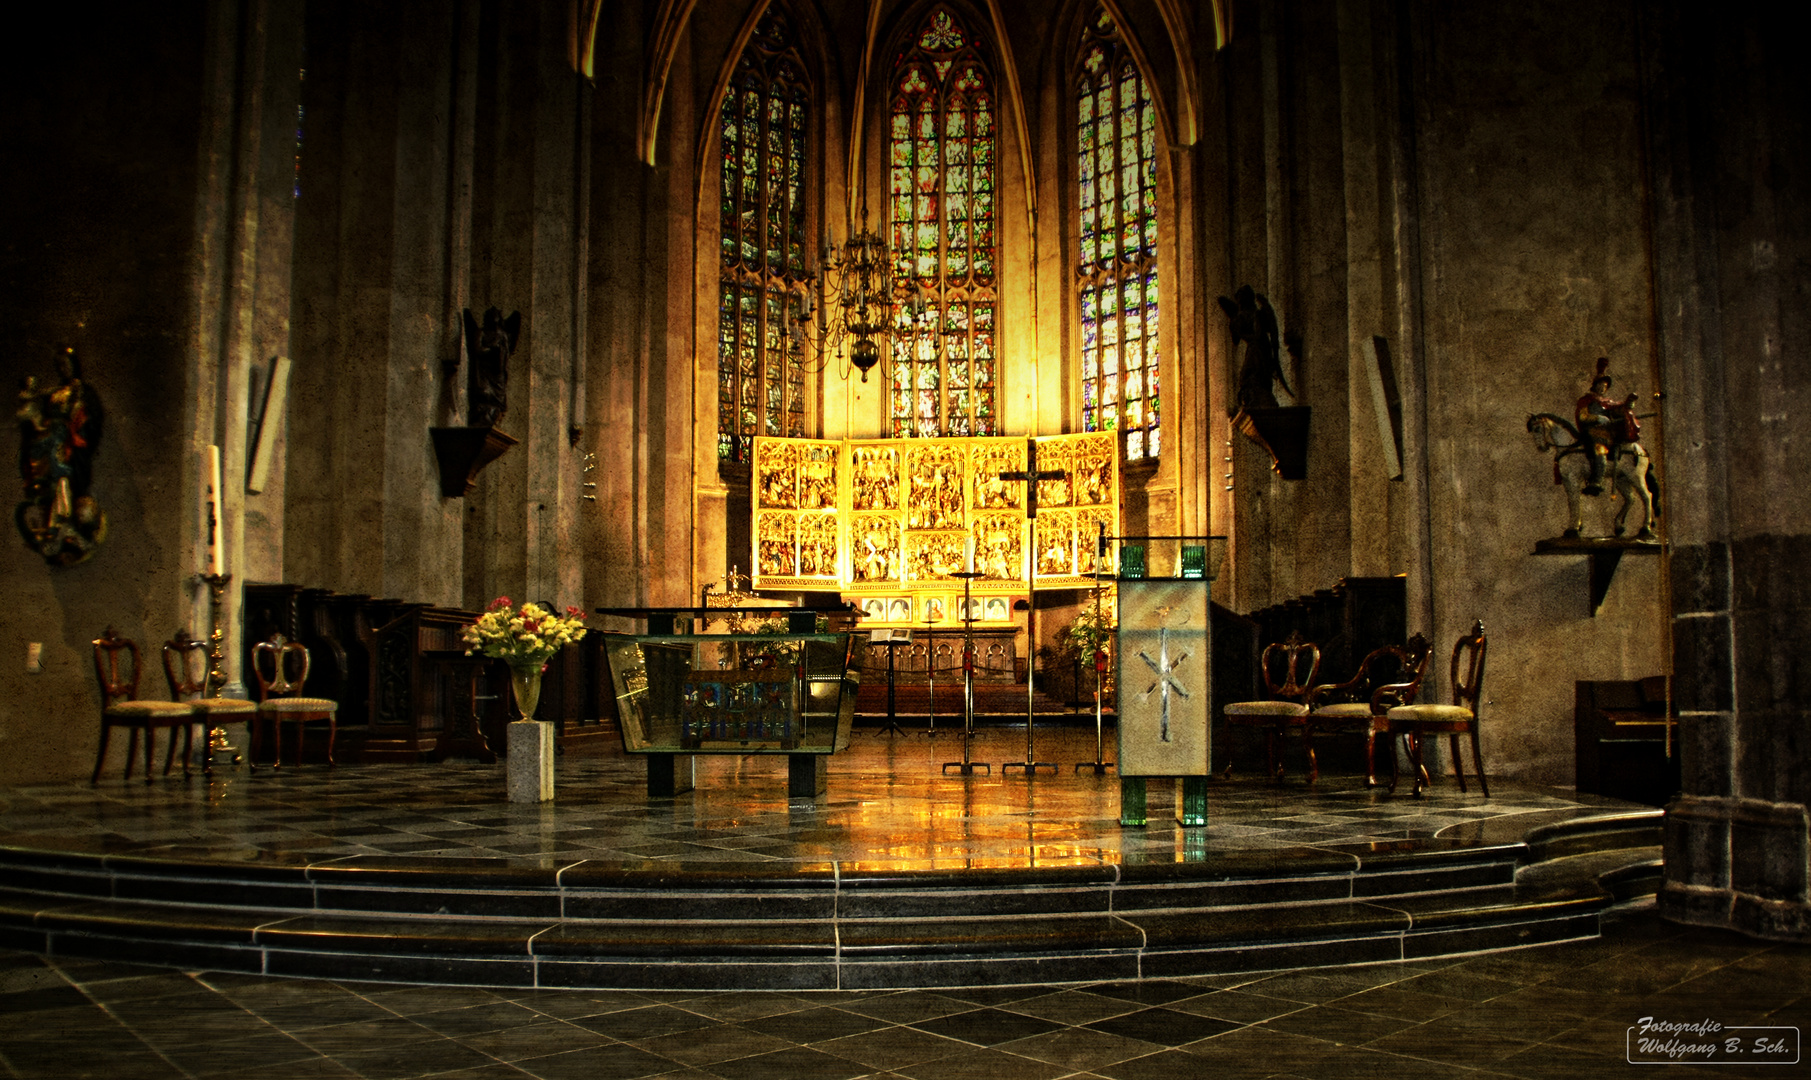 St. Martinuskirche / Venlo